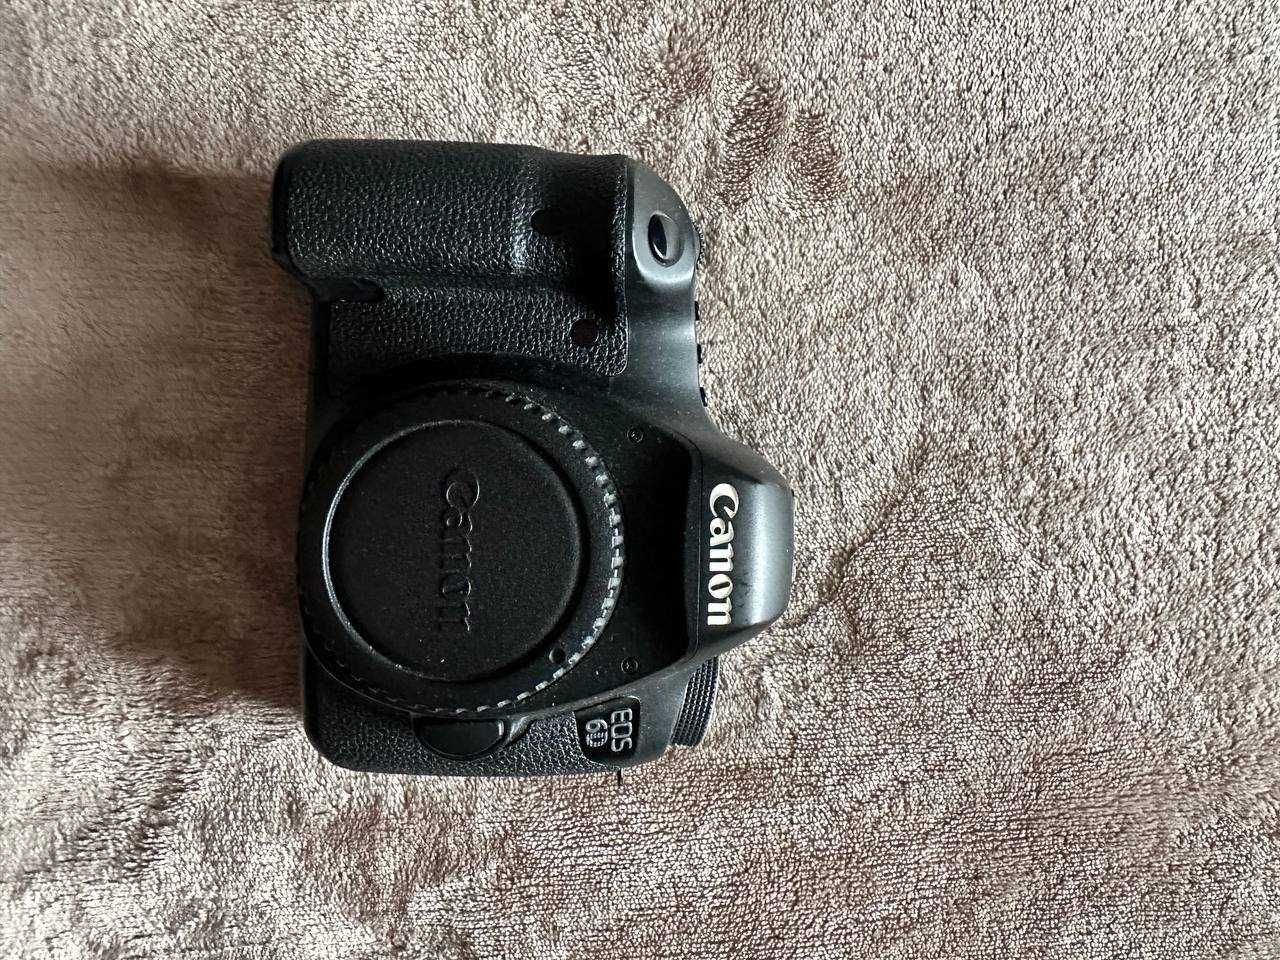 Canon 5D mark III